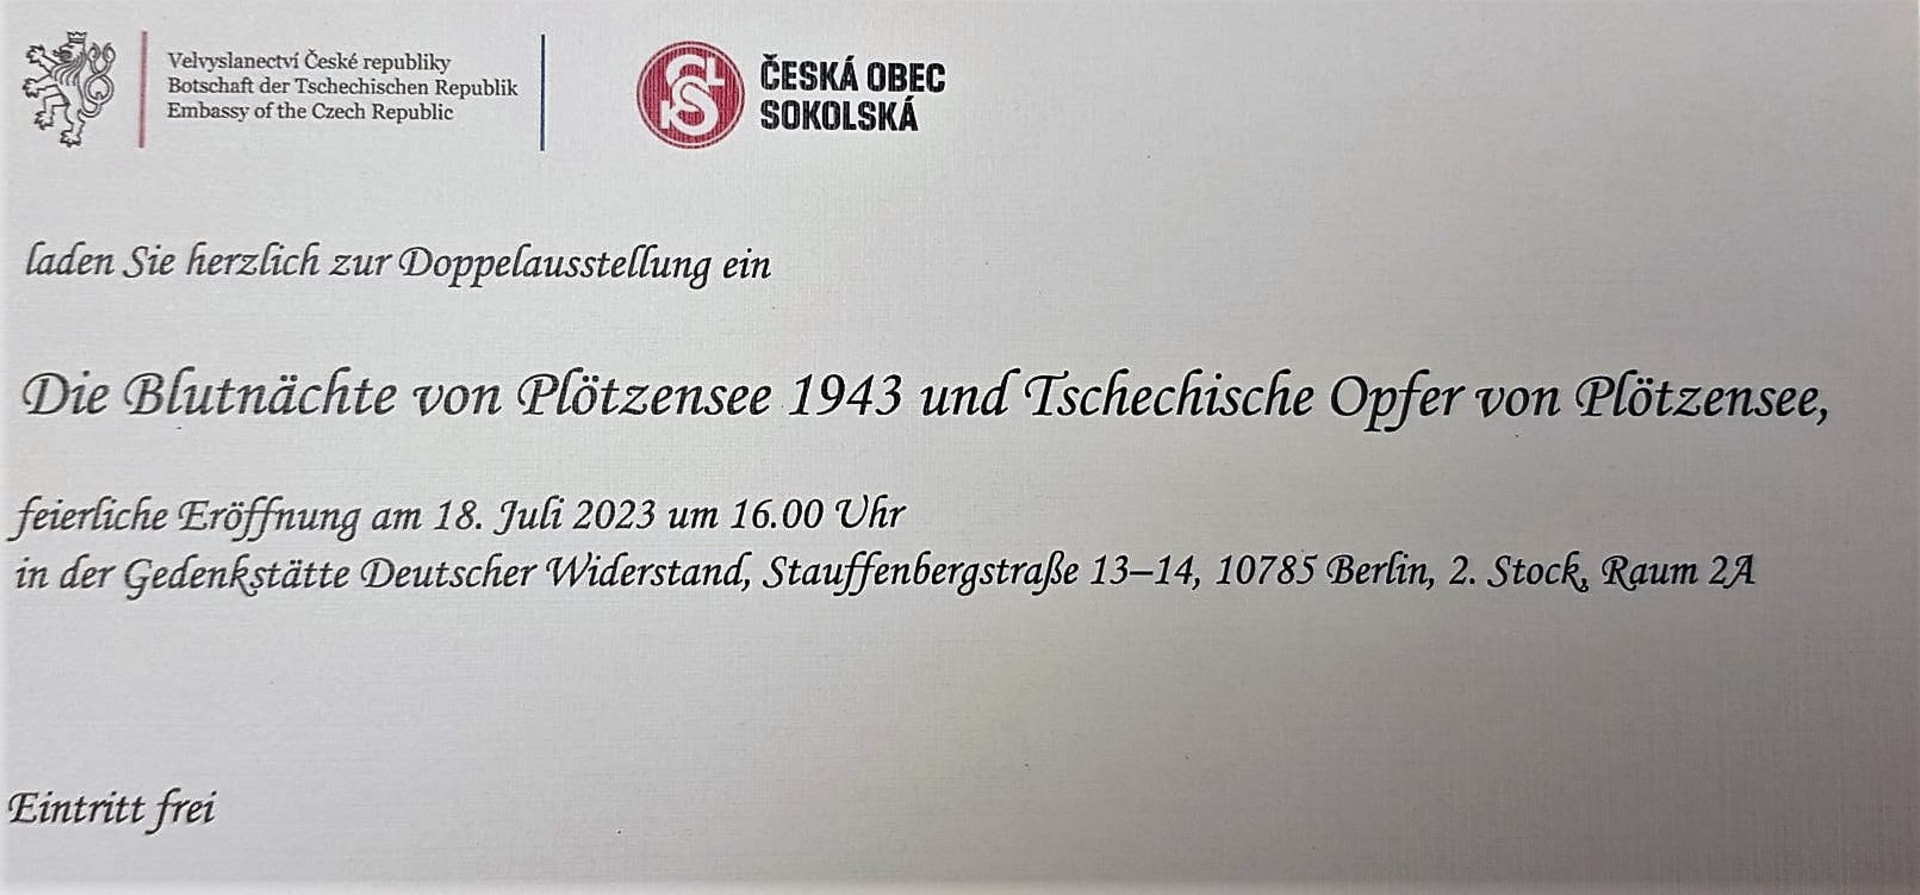 Pozvánka na aktuální výstavu v Památníku německého odboje v Berlíně.